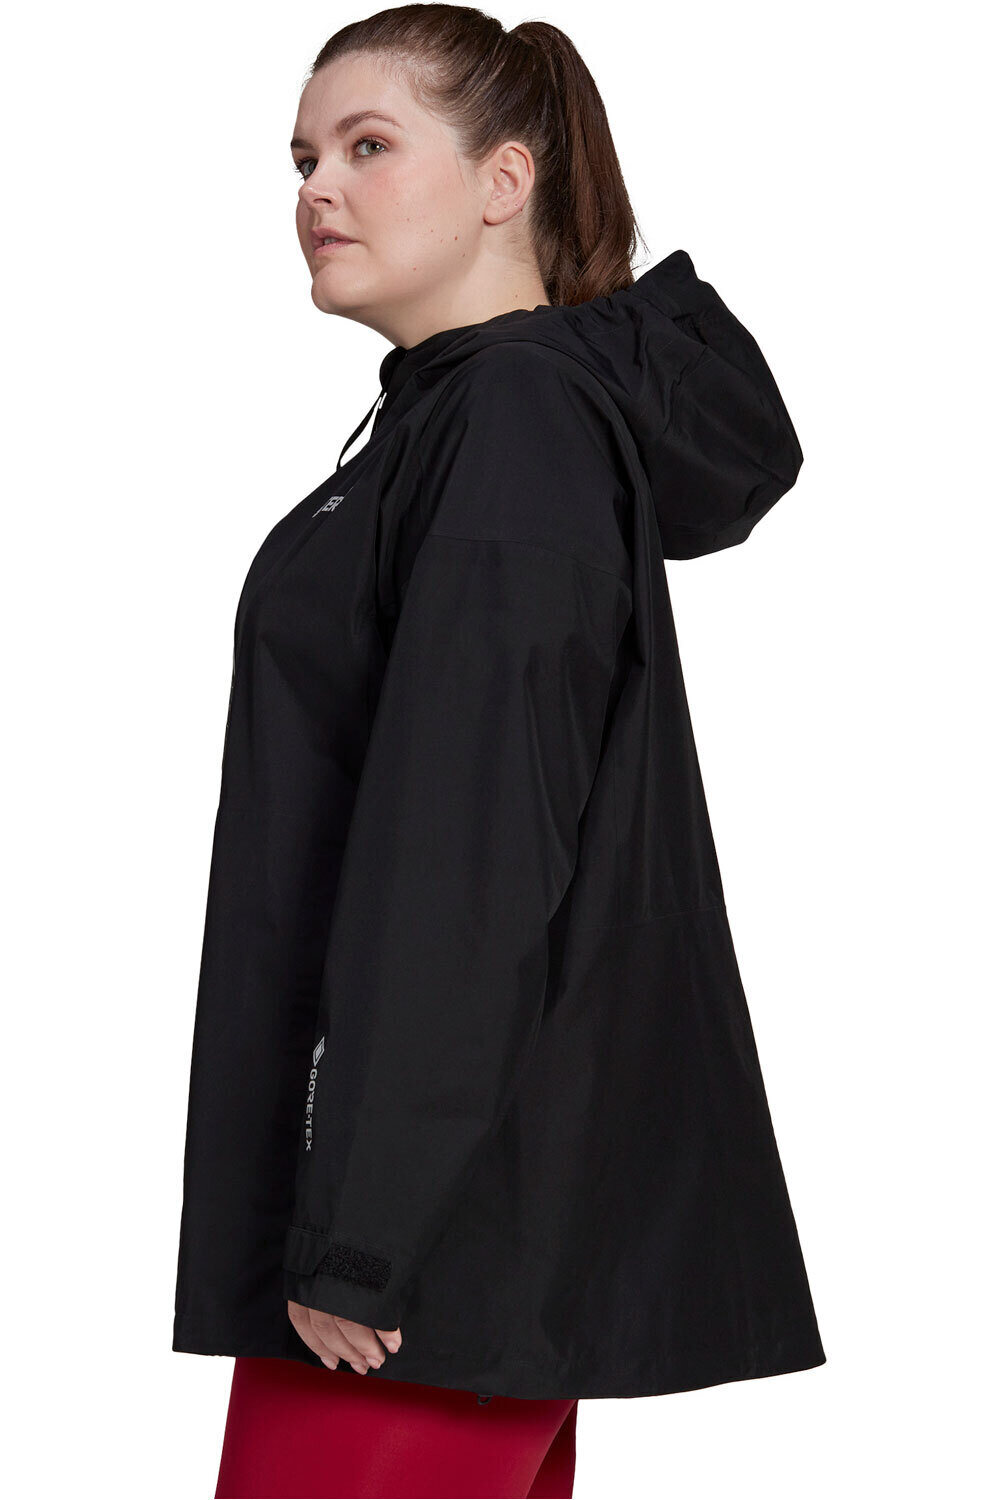 adidas chaqueta impermeable mujer Terrex GORE-TEX Paclite Rain (Tallas grandes) vista detalle